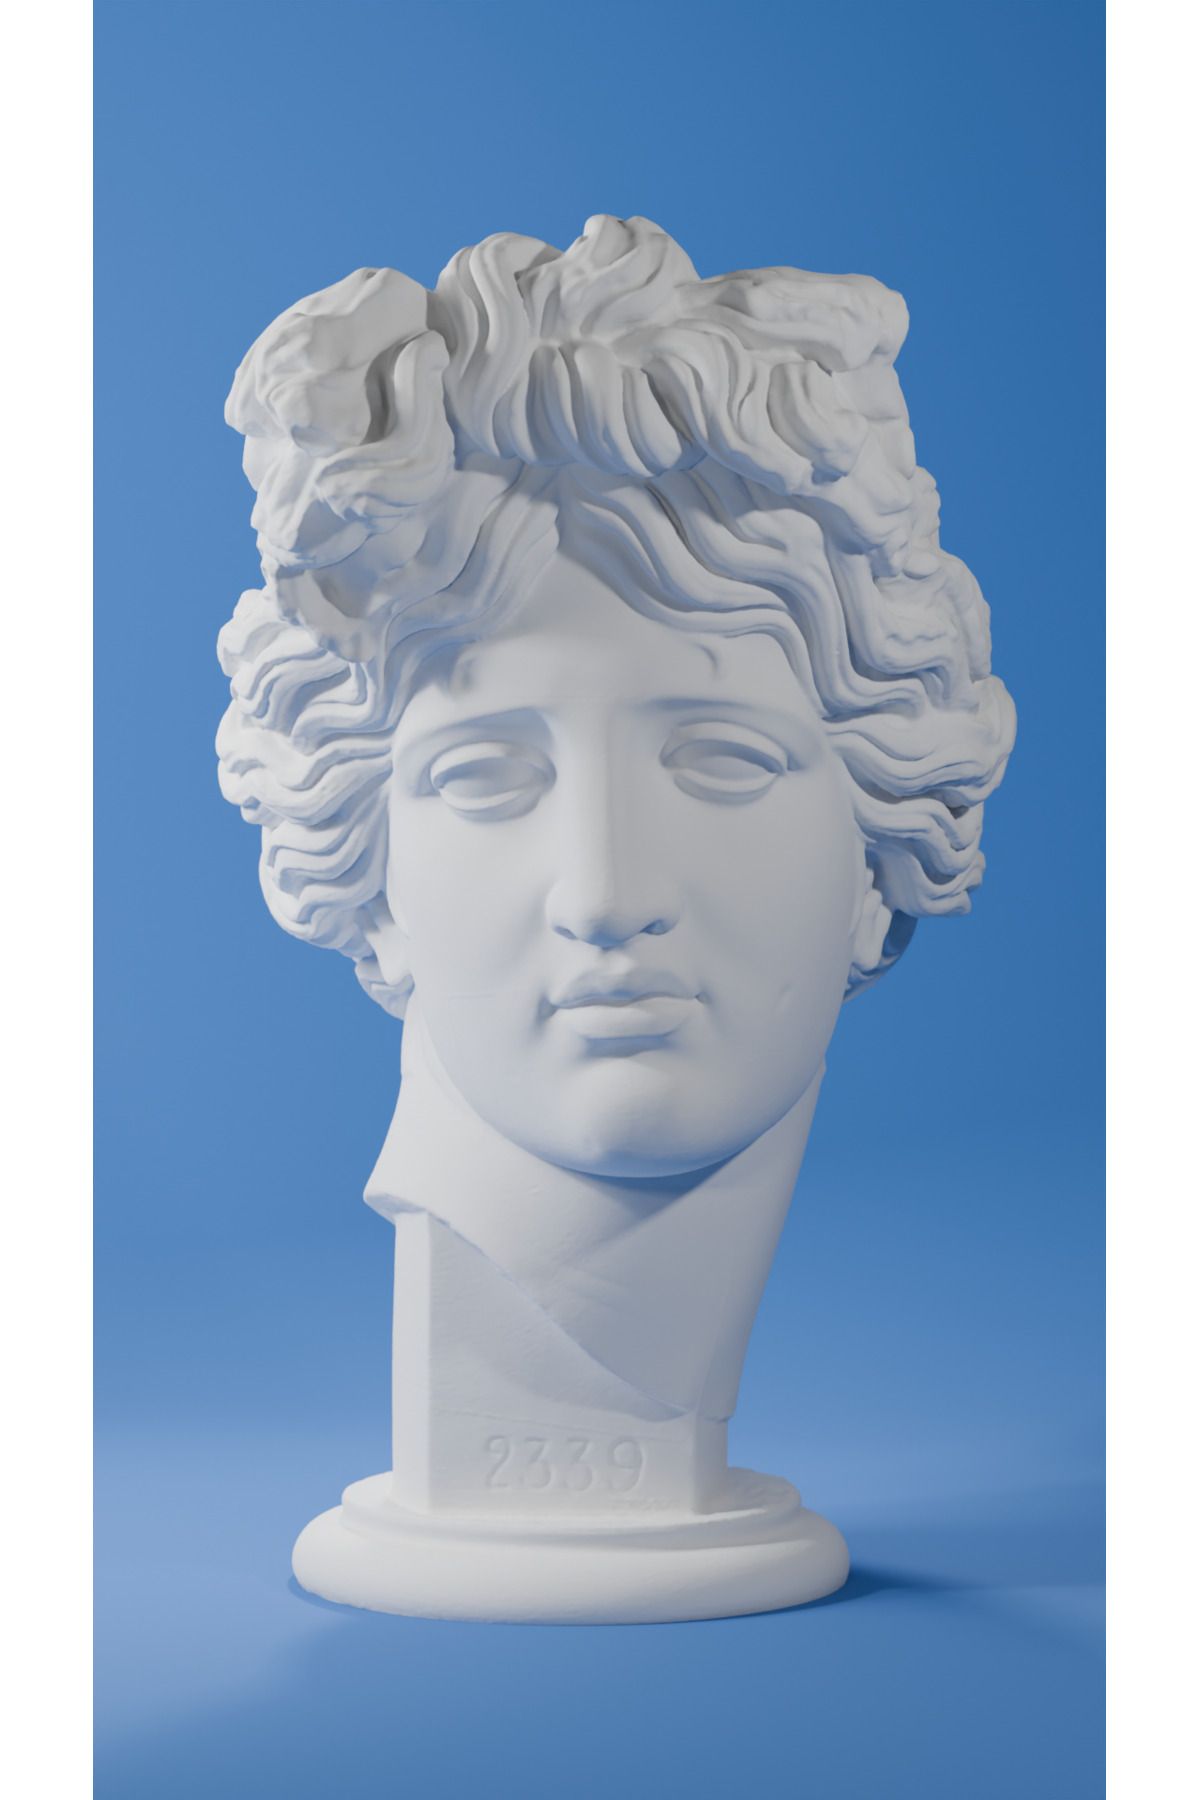 Cuboid 3D Büyük Boy 20cm Dekoratif Apollon Heykel Figür Büst Beyaz Renk Büyük Boy 20cm